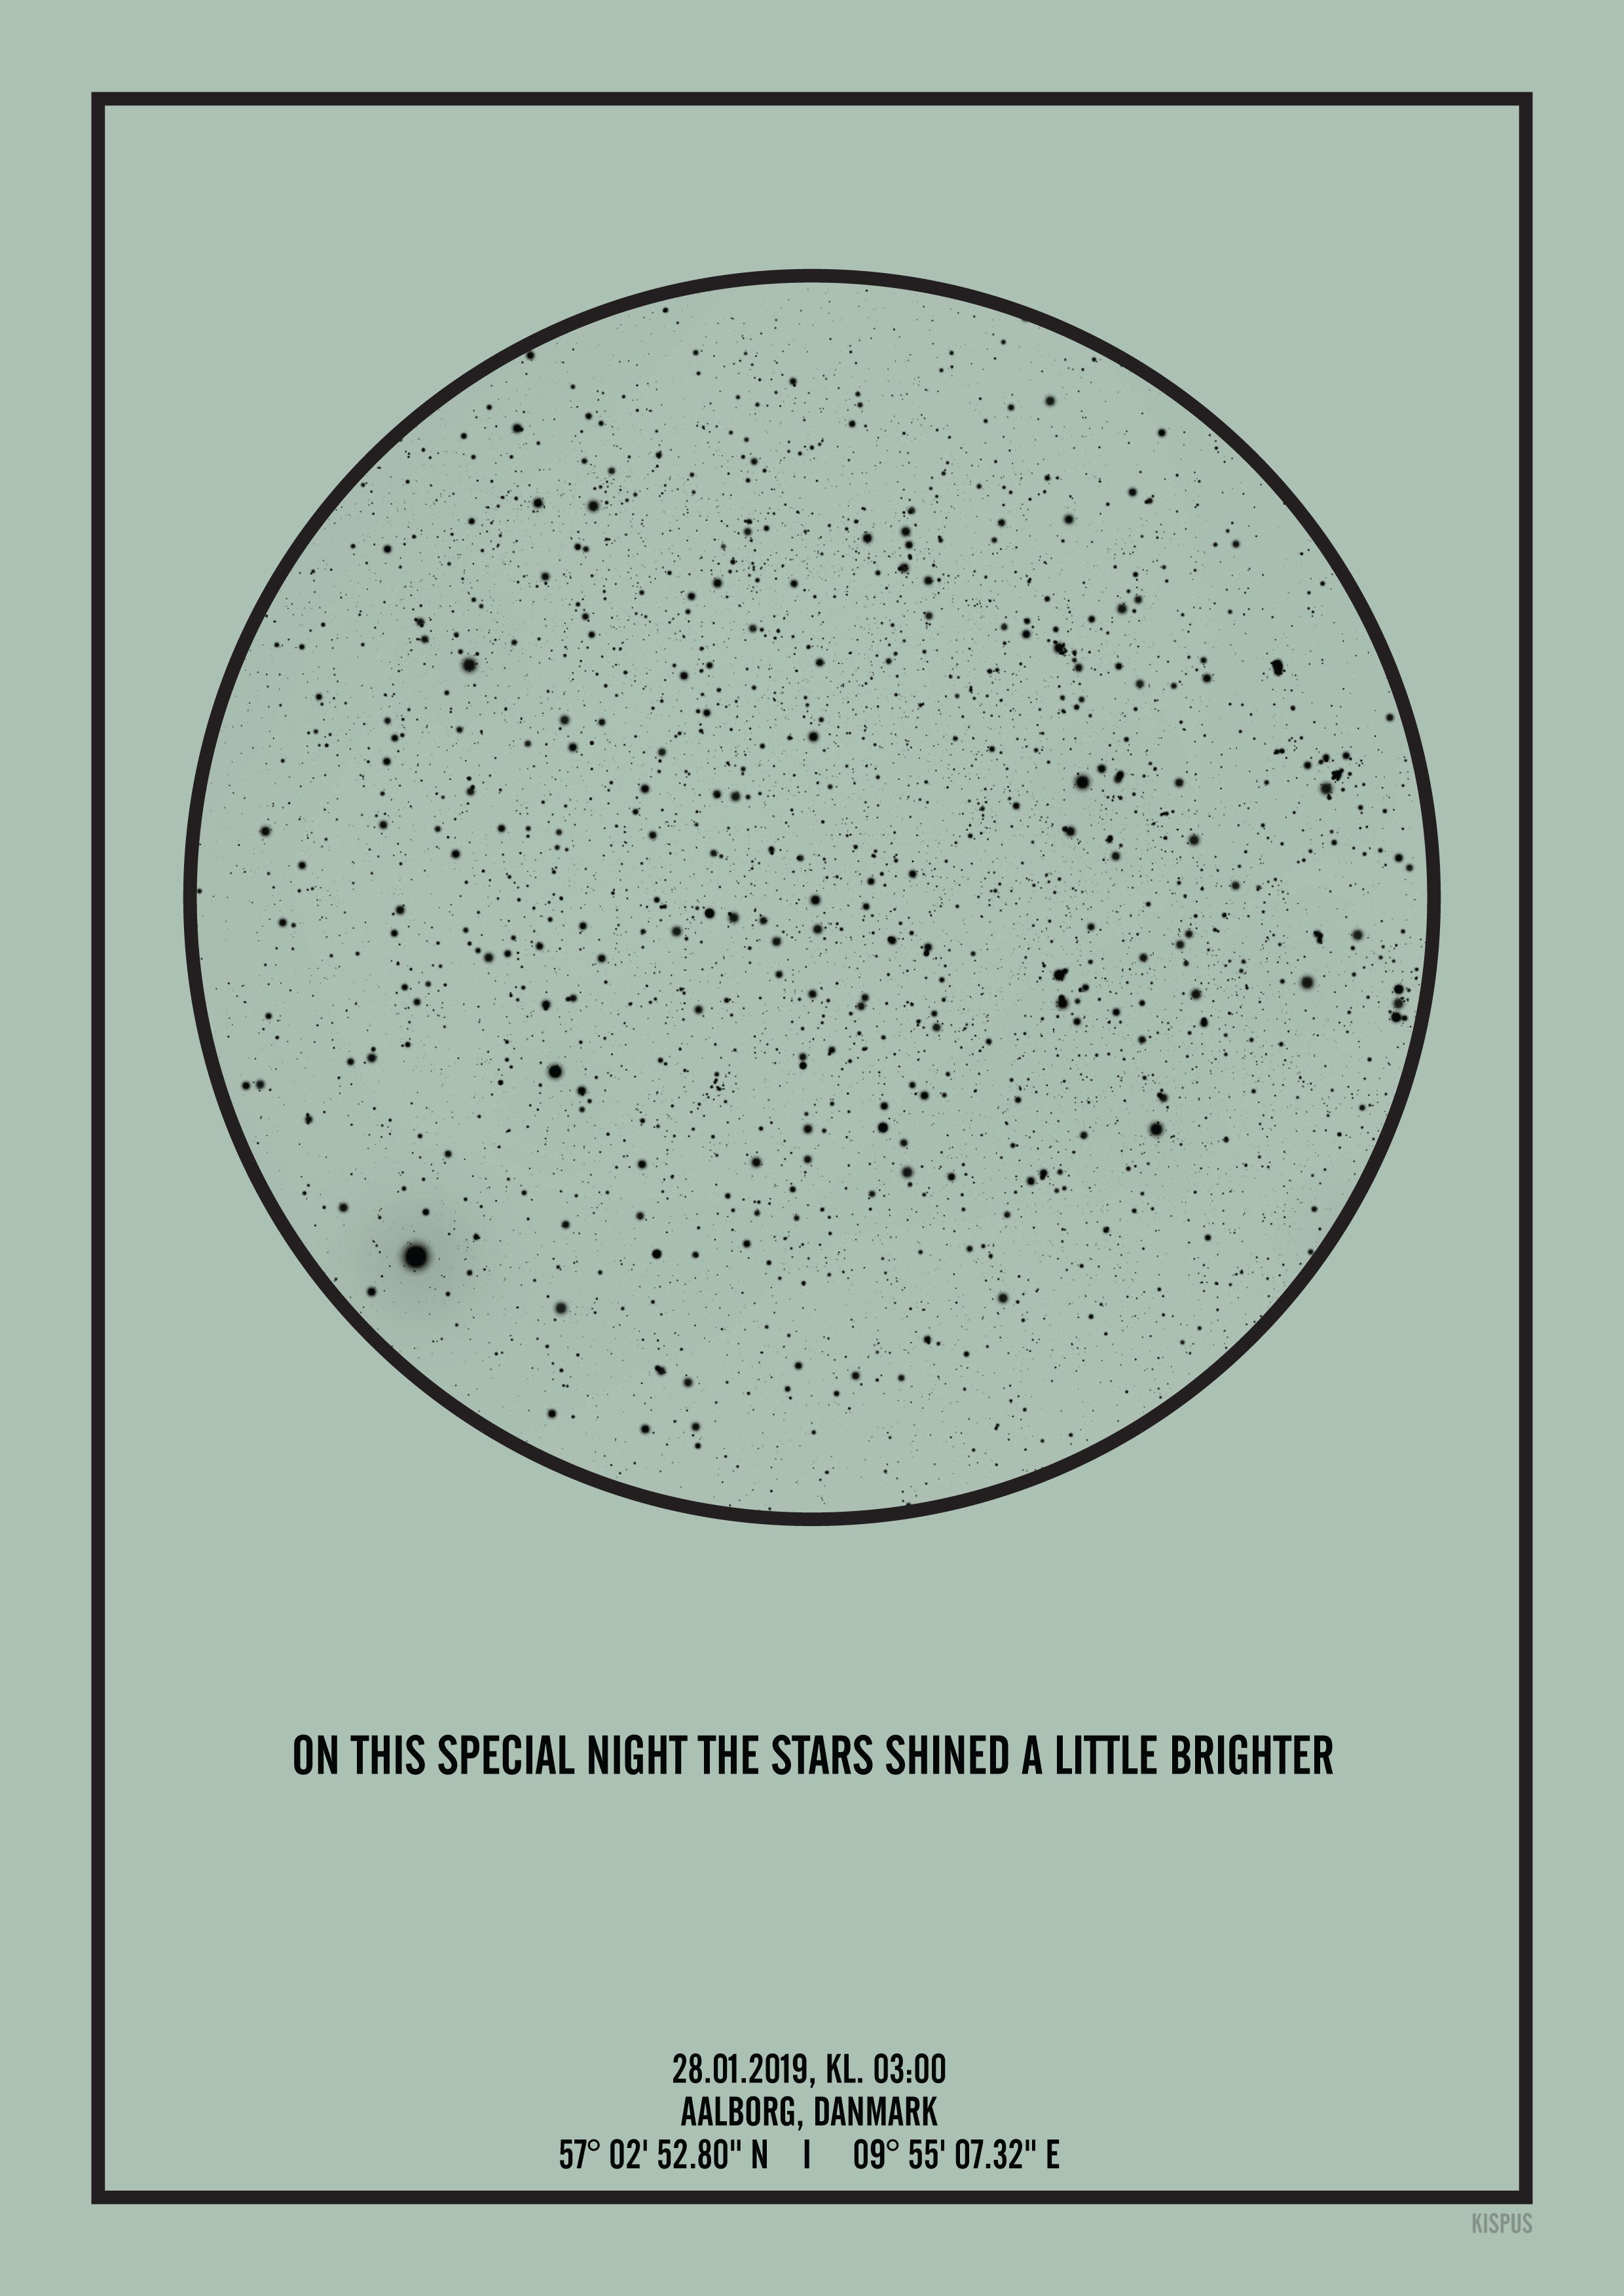 Se PERSONLIG STJERNEHIMMEL PLAKAT (LYSEGRØN) - A4 / Sort tekst + lysegrøn stjernehimmel / Klar stjernehimmel hos KISPUS